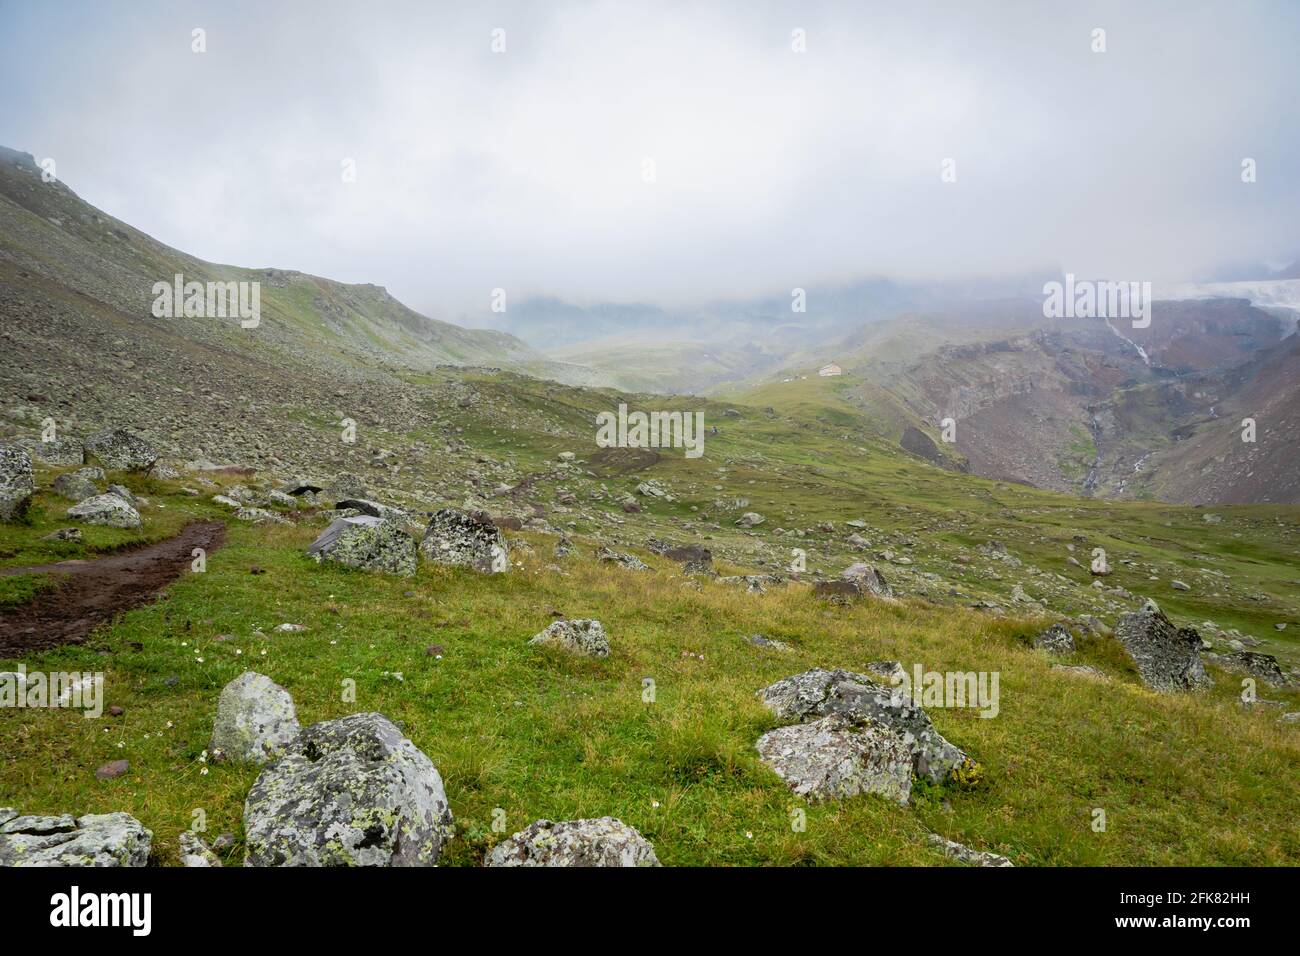 paysage de montagne des highlands avec espace de copie - nature, extérieur, aventure, trekking, randonnée, L'alpinisme concept image dans le mont Kazbegi, Géorgie Banque D'Images